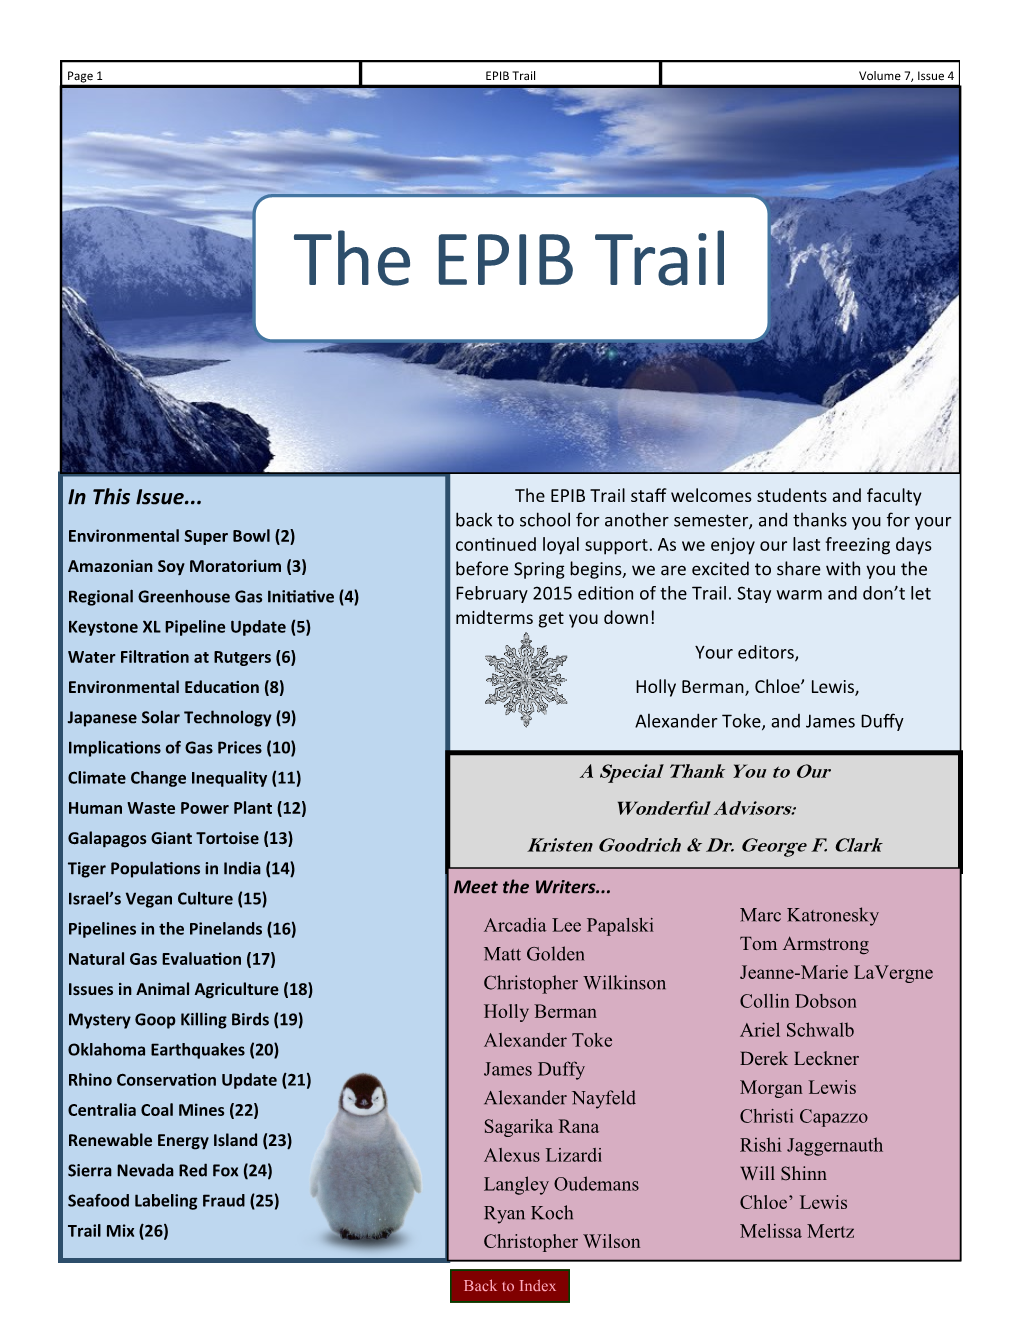 The EPIB Trail